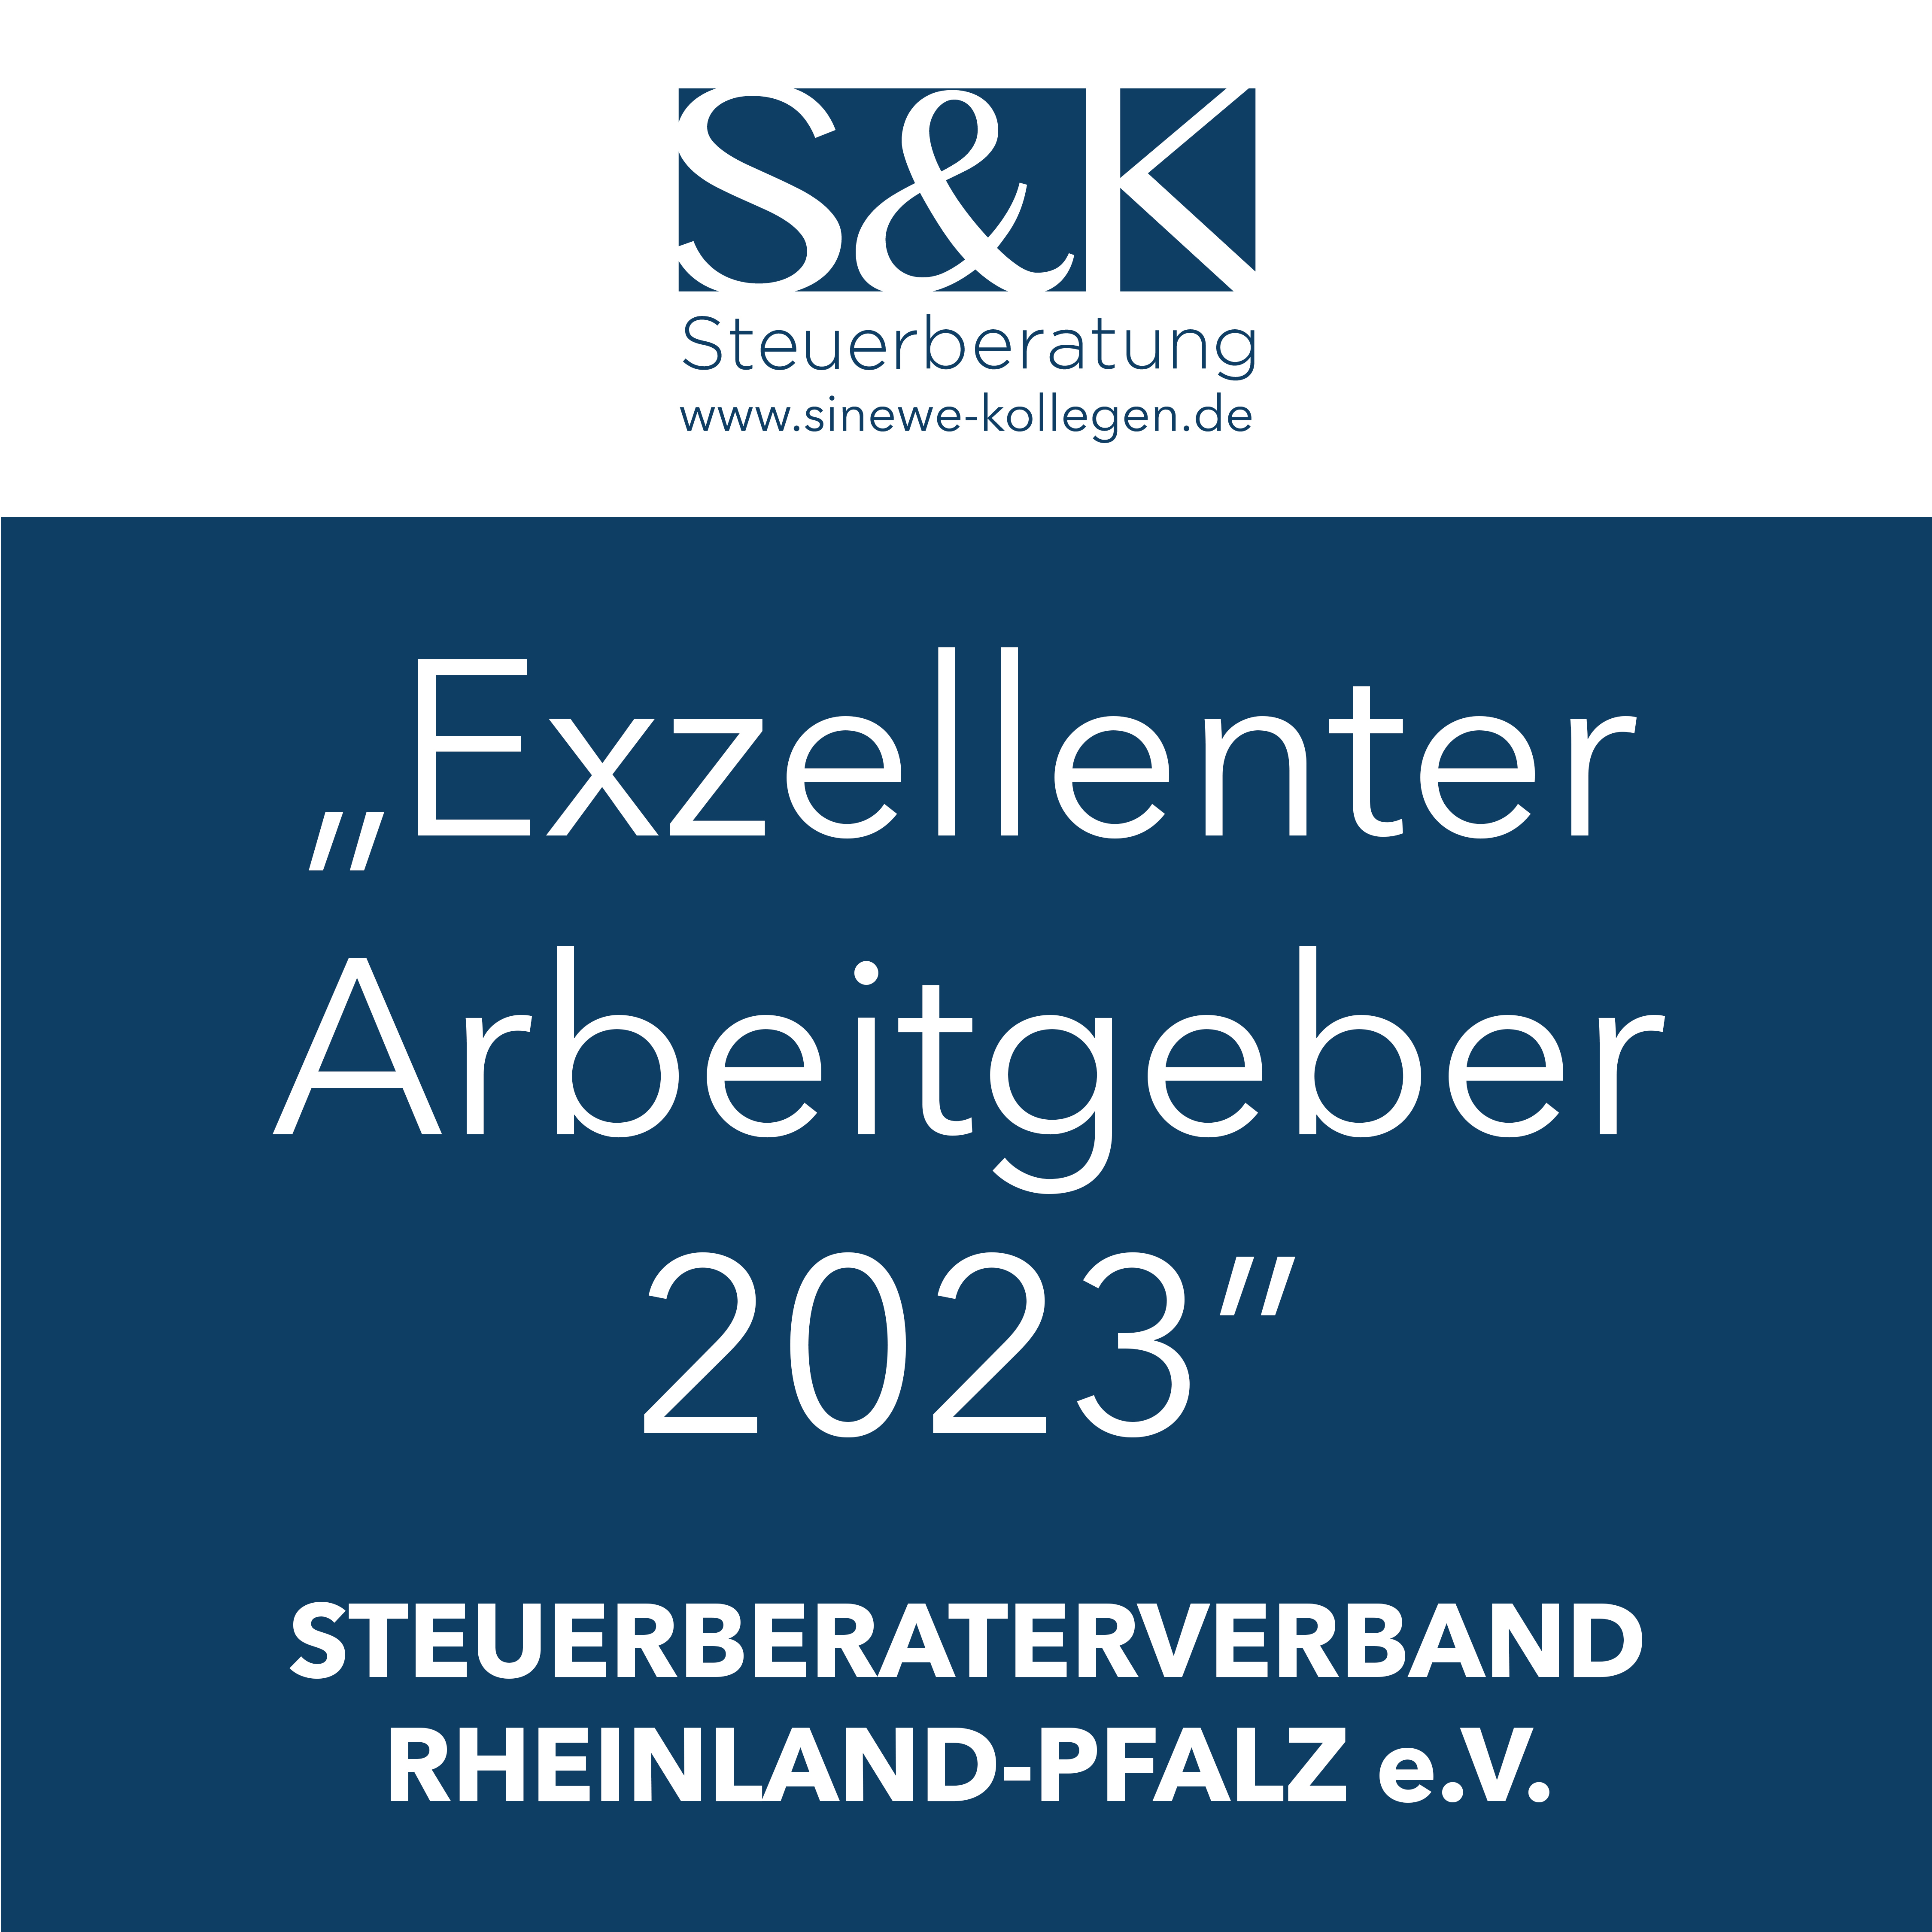 Auszeichnung: Steuerberaterverband Rheinland-Pfalz e.V. - Exzellenter Arbeitgeber 2023